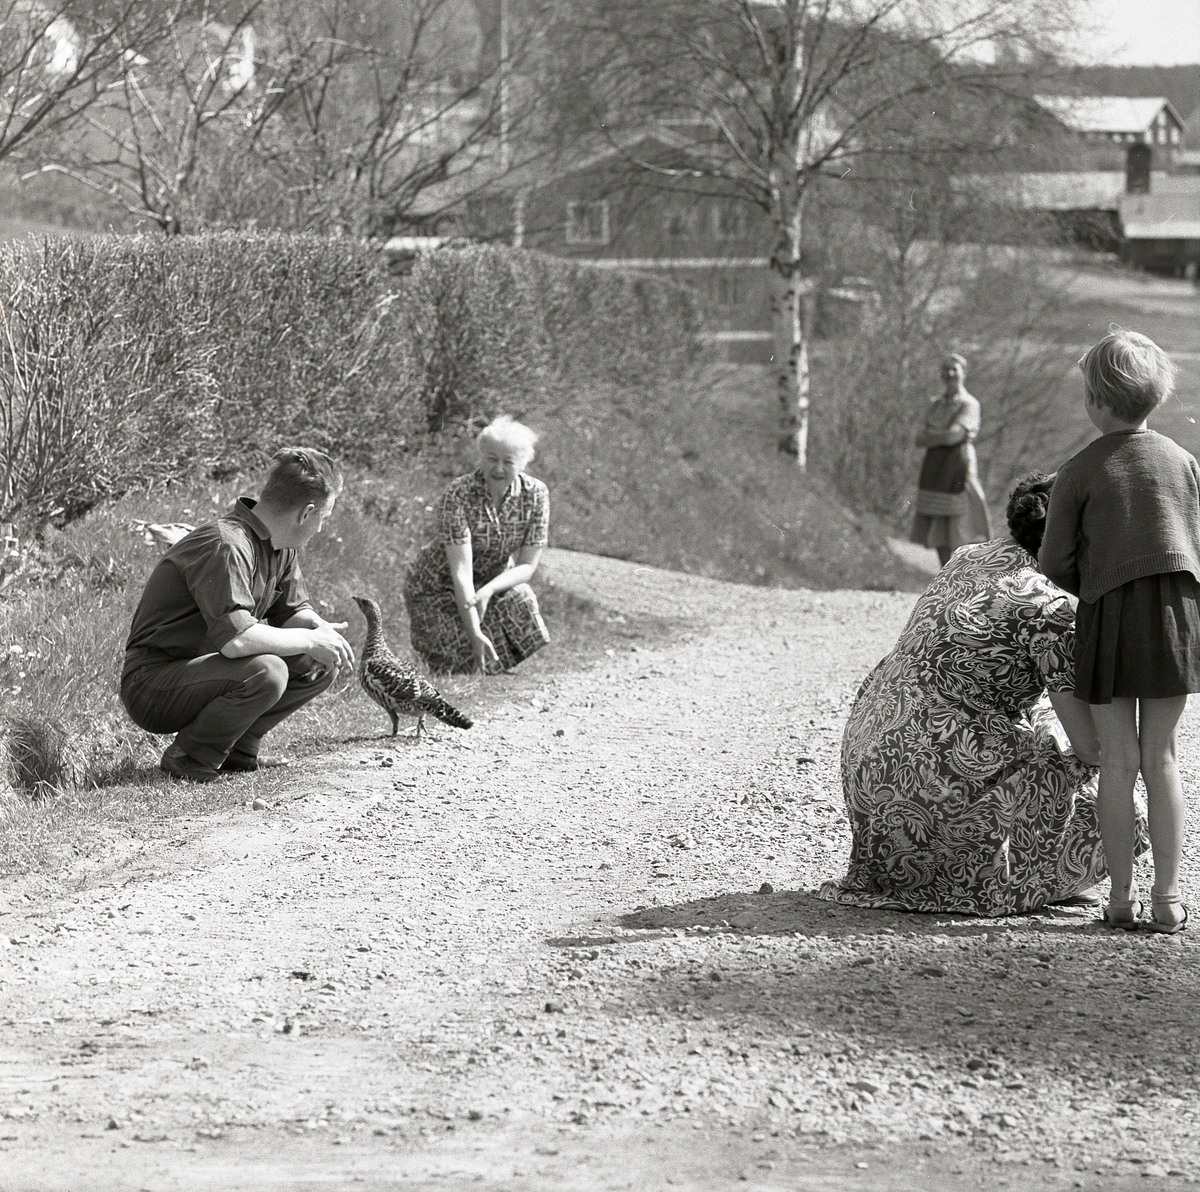 Några män och kvinnor står på en grusväg och tittar på en   tjäderhöna. Bredvid vägen finns en häck och några hus, Krylbo 16 maj 1960.